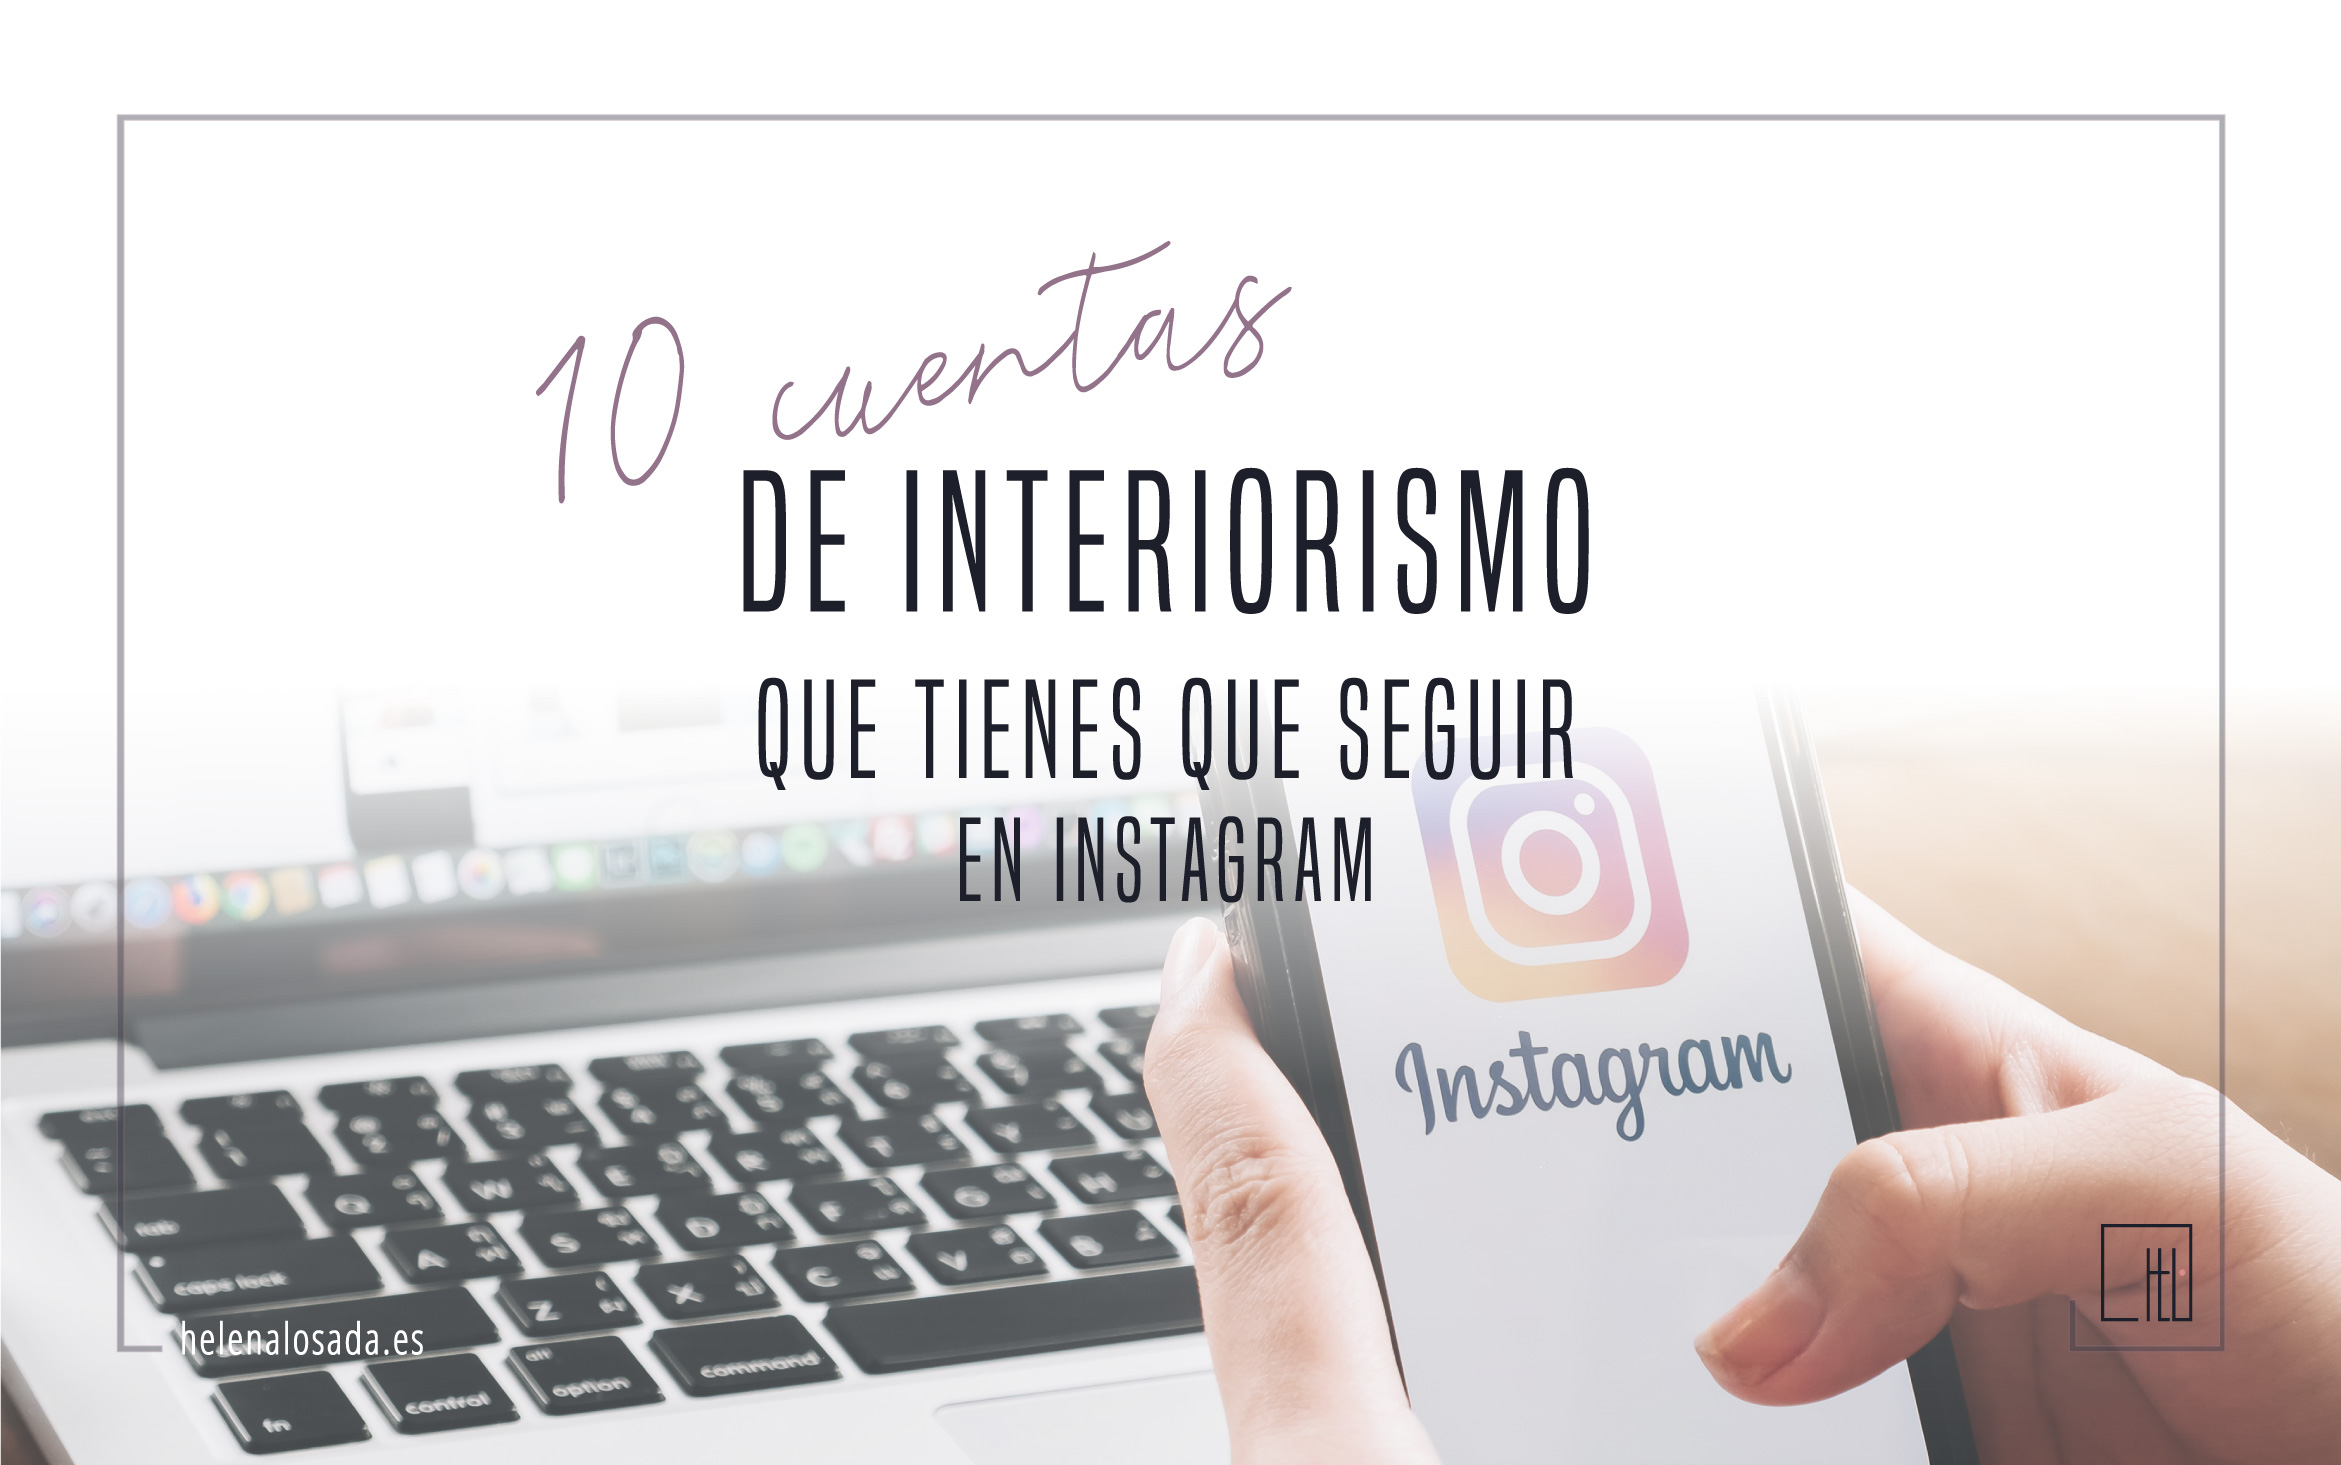 10 cuentas de Instagram de interiorismo